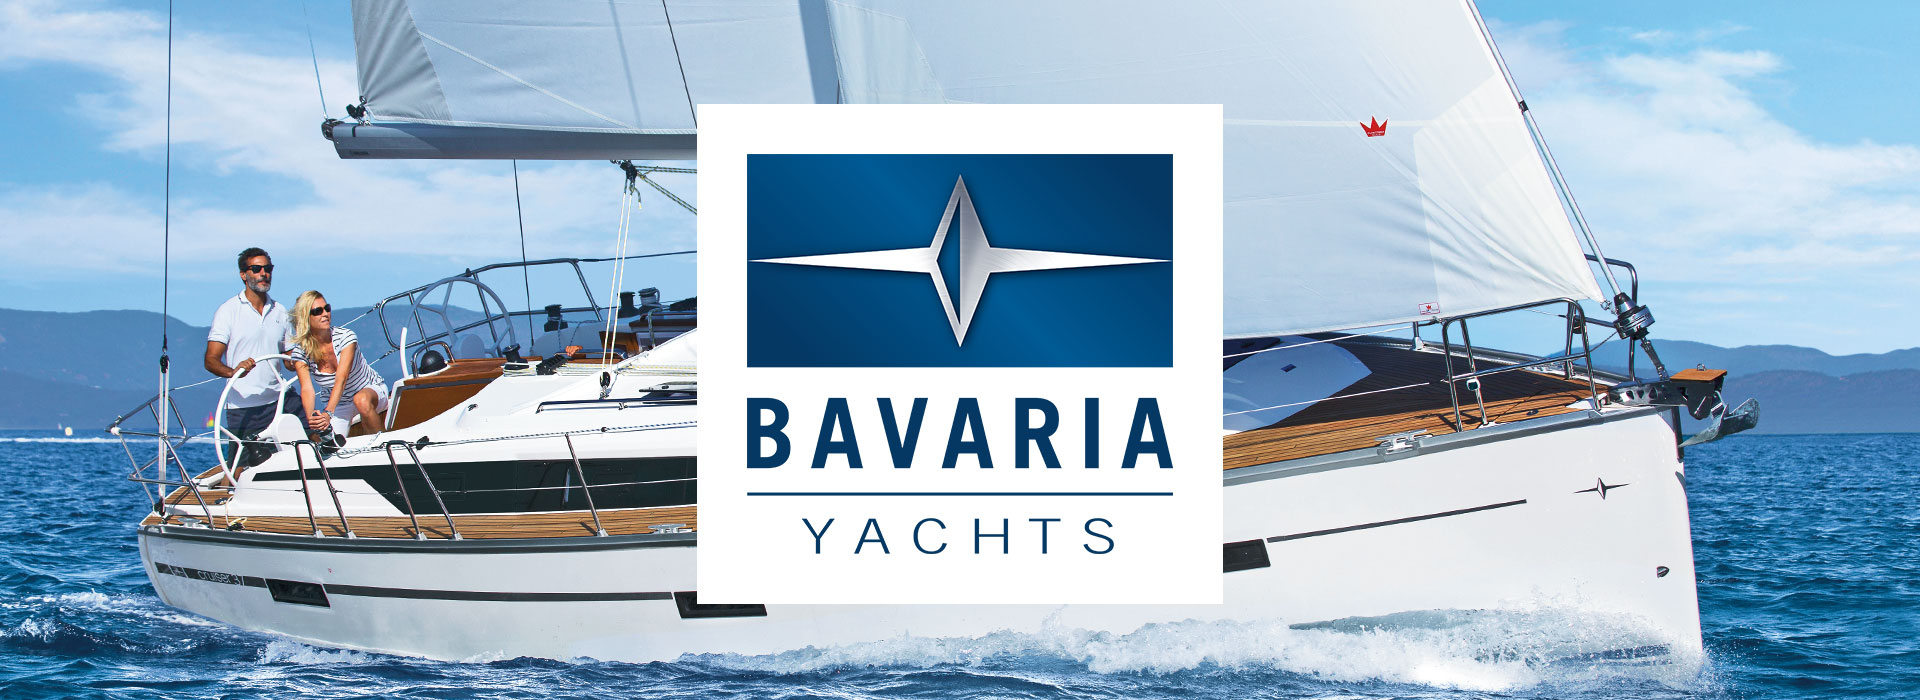 bavaria yacht spares uk